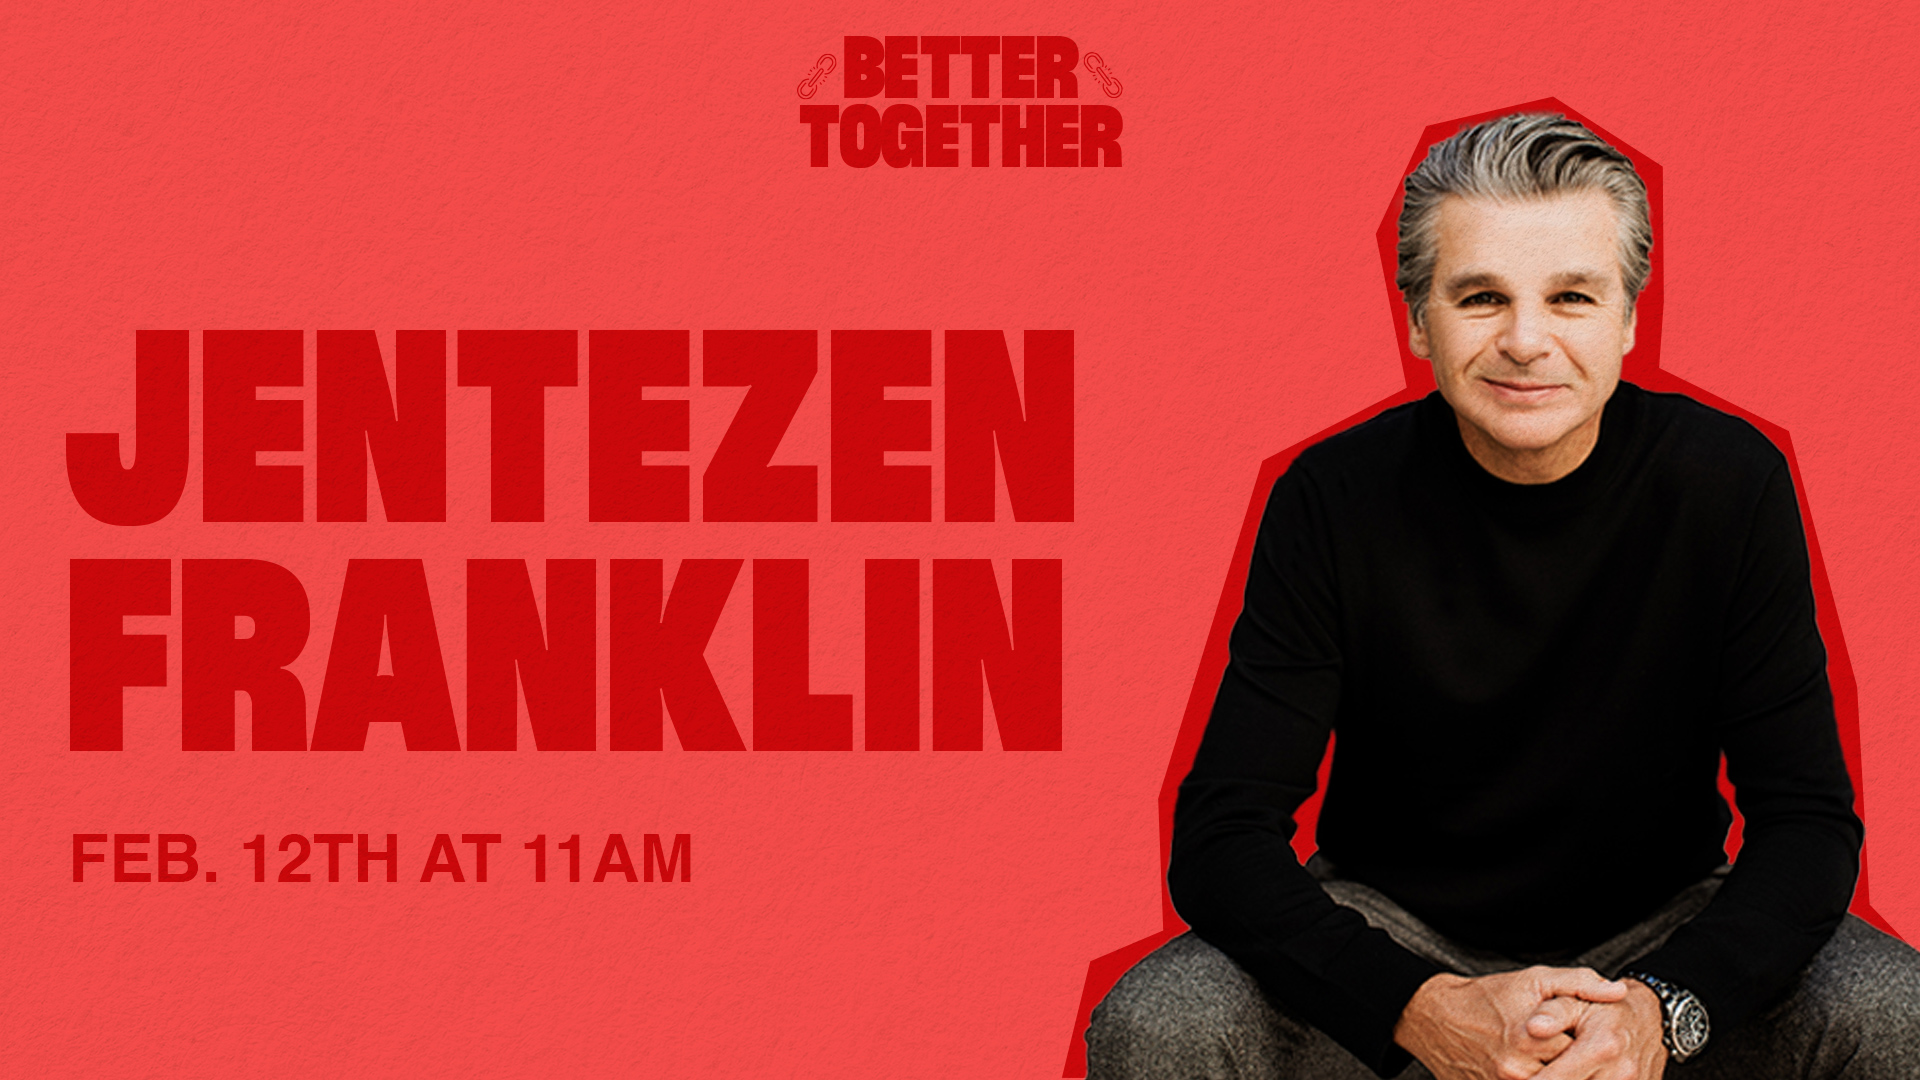 Better Together: Jentezen Franklin at the Spartanburg campus